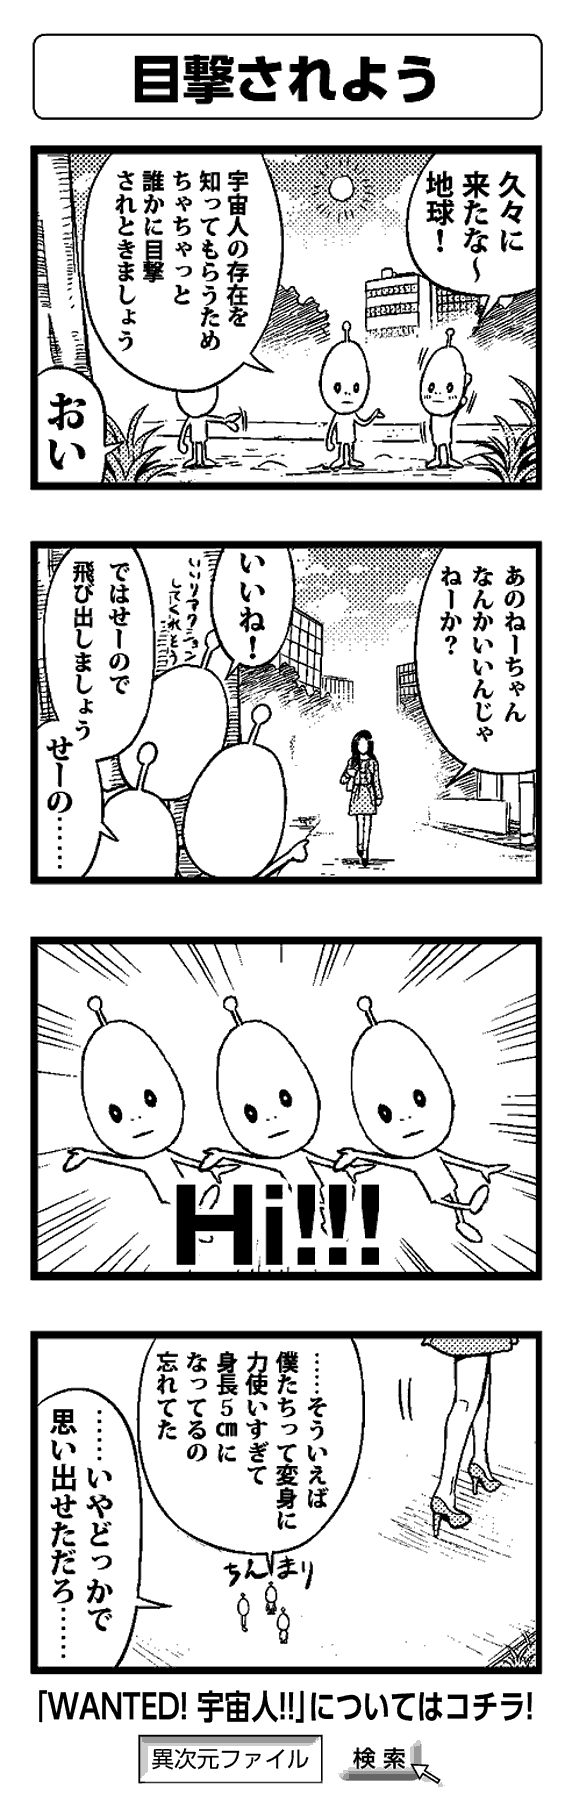 目撃されよう - 四コマ漫画ノンフィクション #006